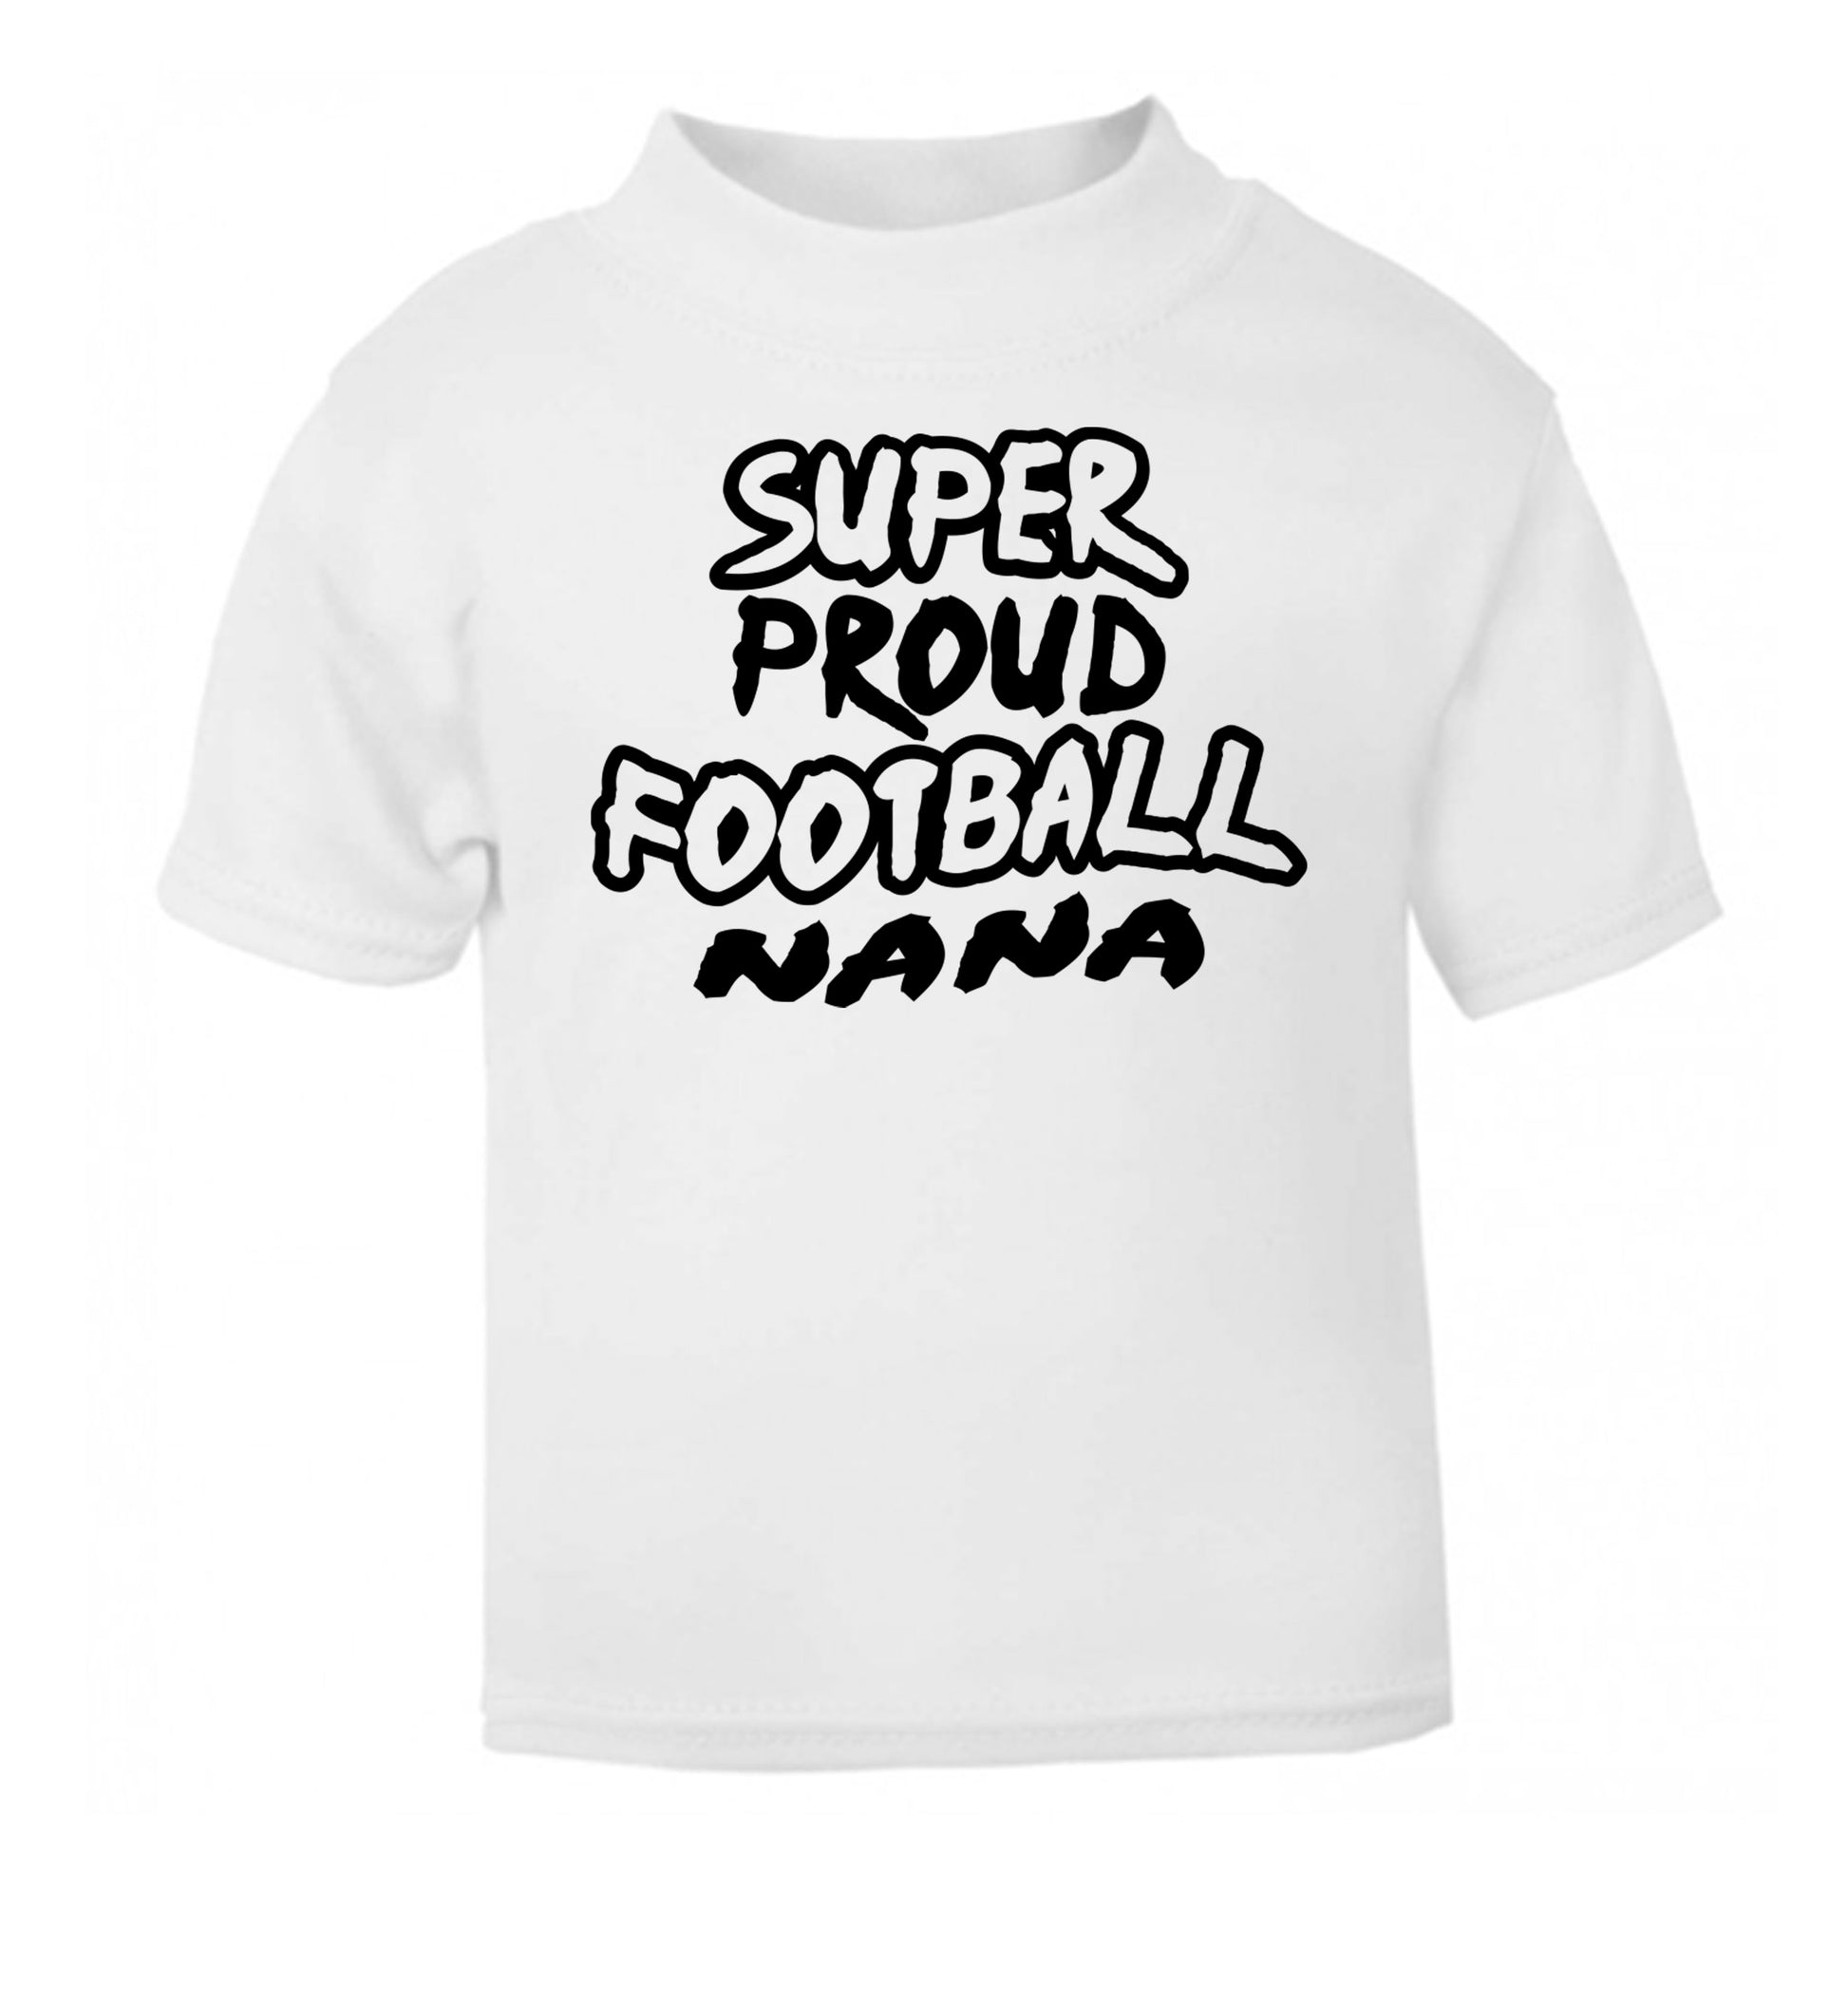 Super proud football nana white Baby Toddler Tshirt 2 Years